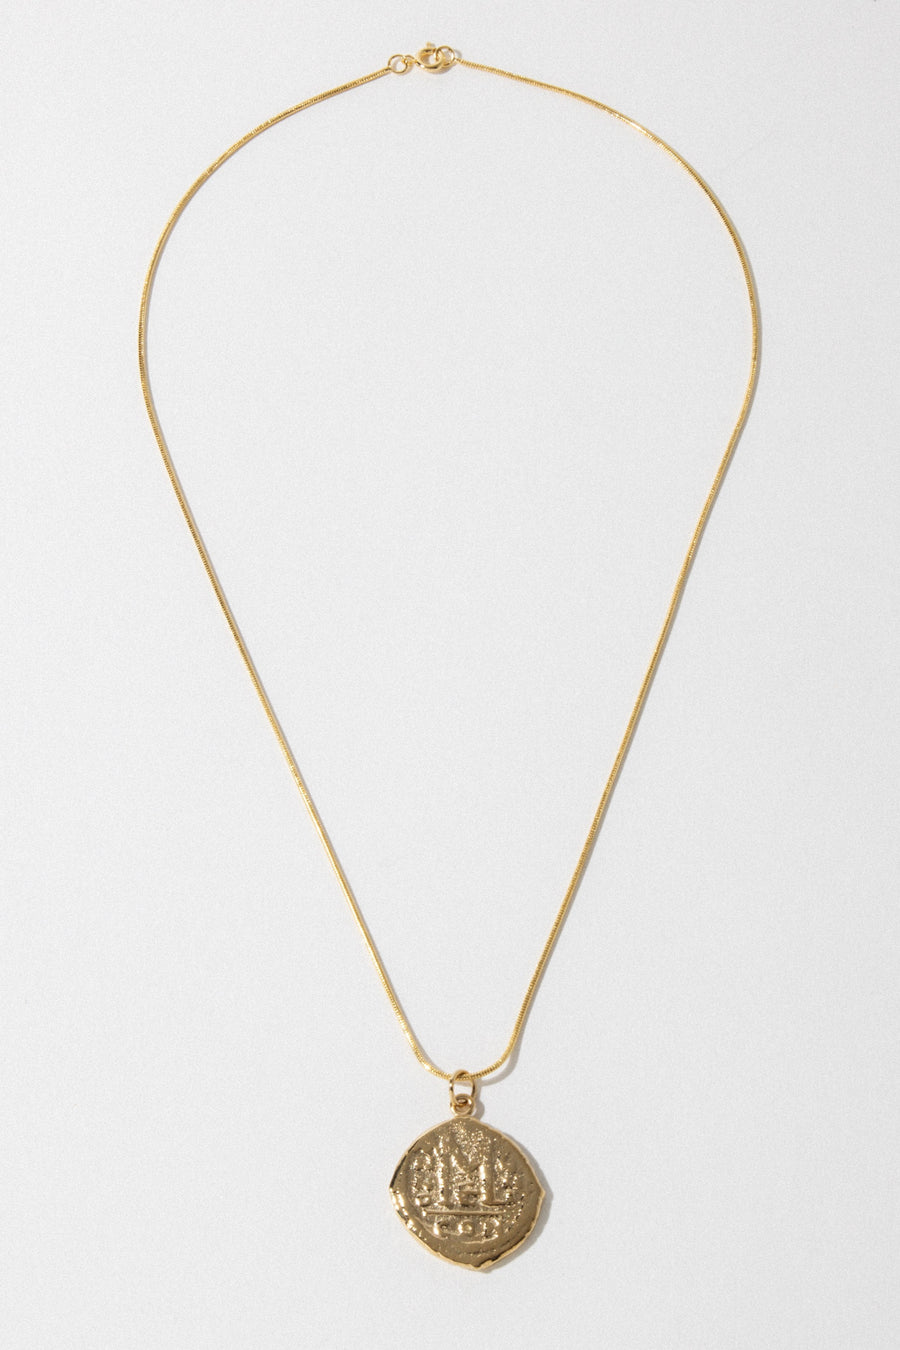 Dona Italia Jewelry Gold / 18 Inches Cortez Coin Necklace